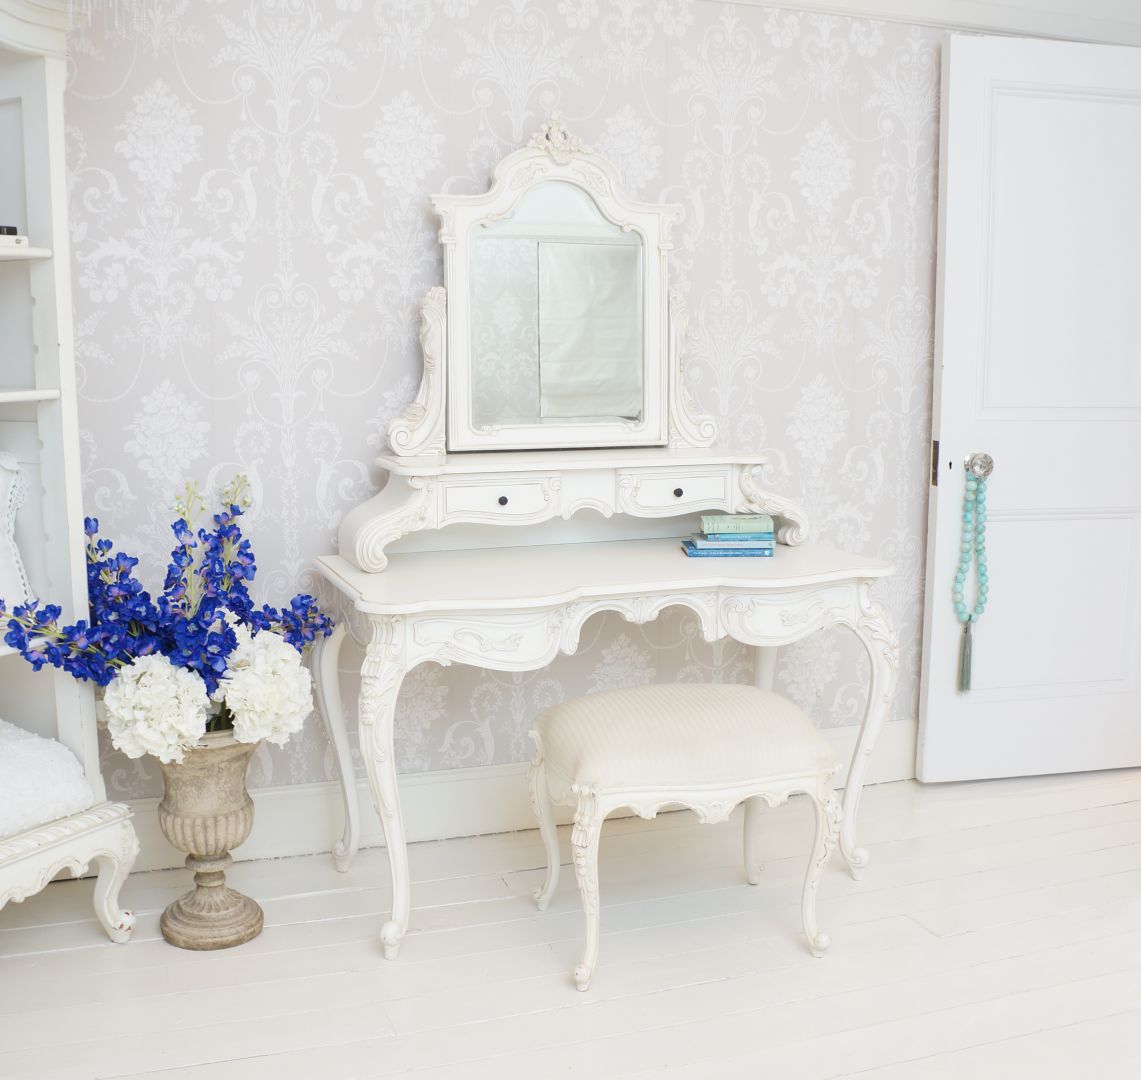 Toaletka Provencal Grande White Dressing Table. Do stylizowanego mebla warto dopasować pięknie obity fotel, krzesło czy prosty taboret lub puf. Fot. The French Bedroom Co